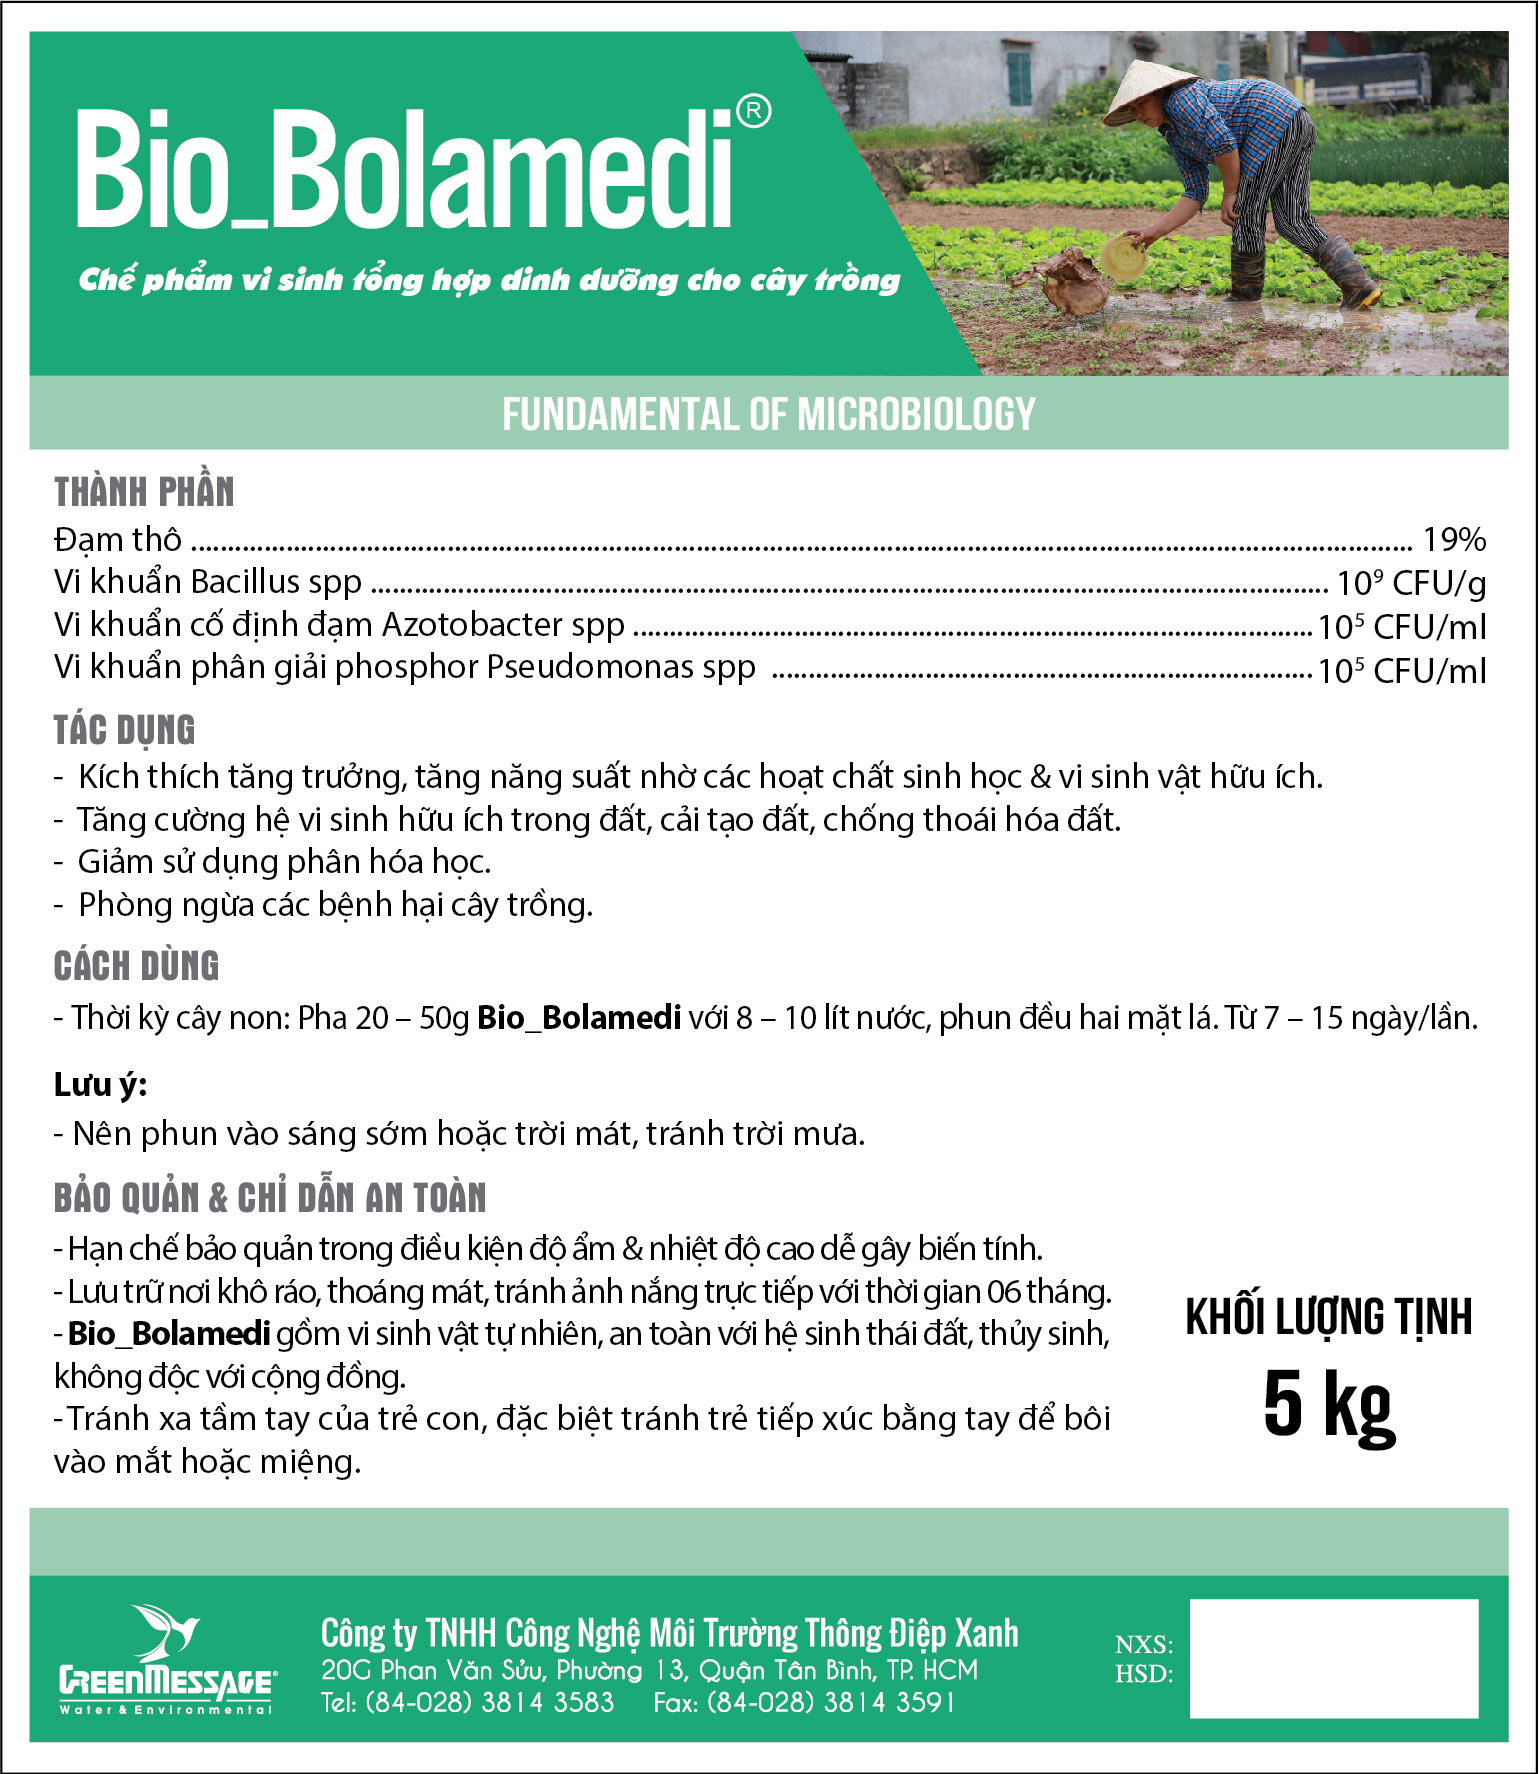 Bio_Bolamedi - Chế phẩm vi sinh tổng hợp dinh dưỡng cho cây trồng